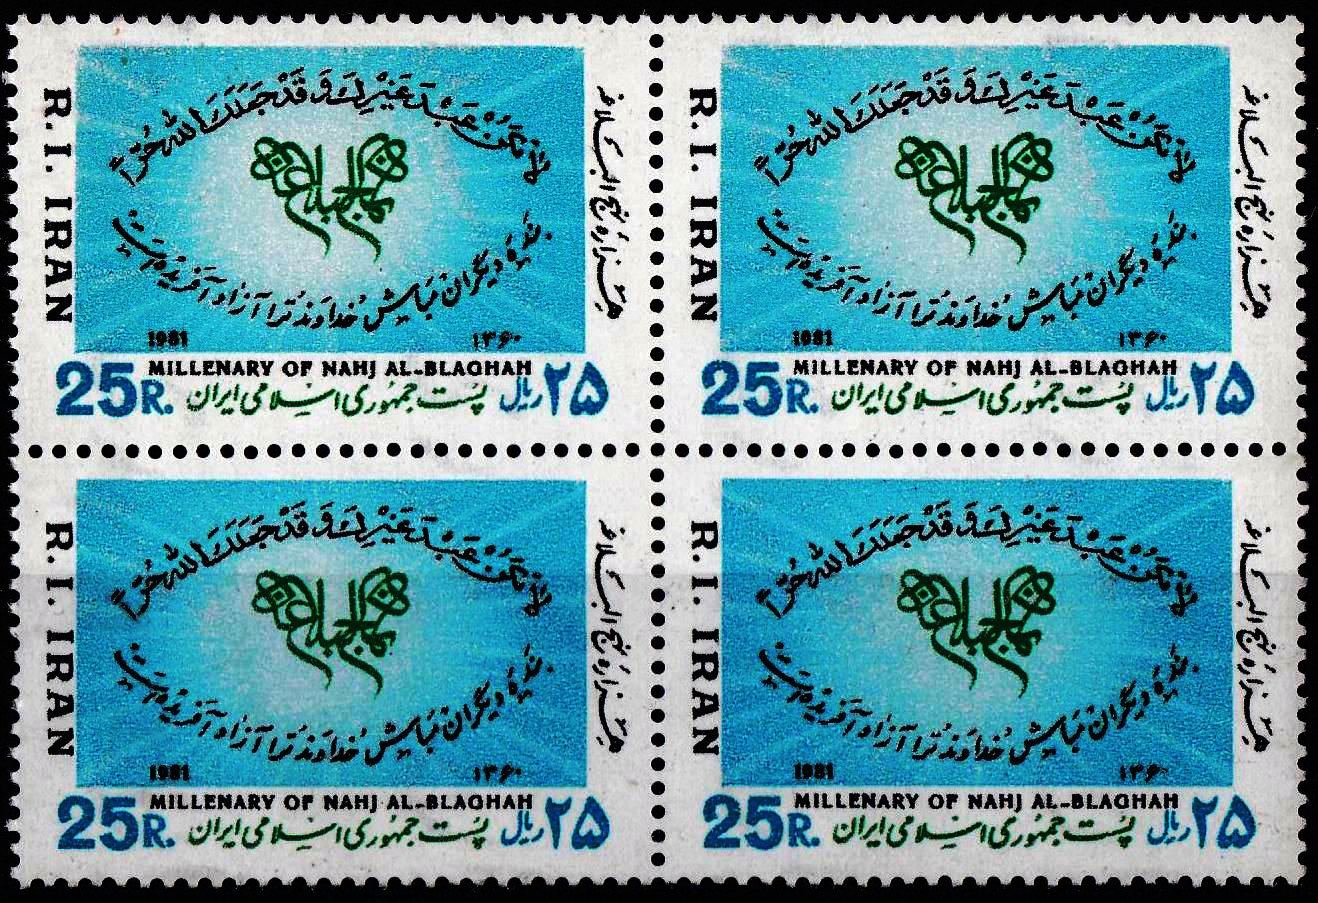 Iran 1981 Stamps Maula Ali Sher e Khuda Hazrat Ali